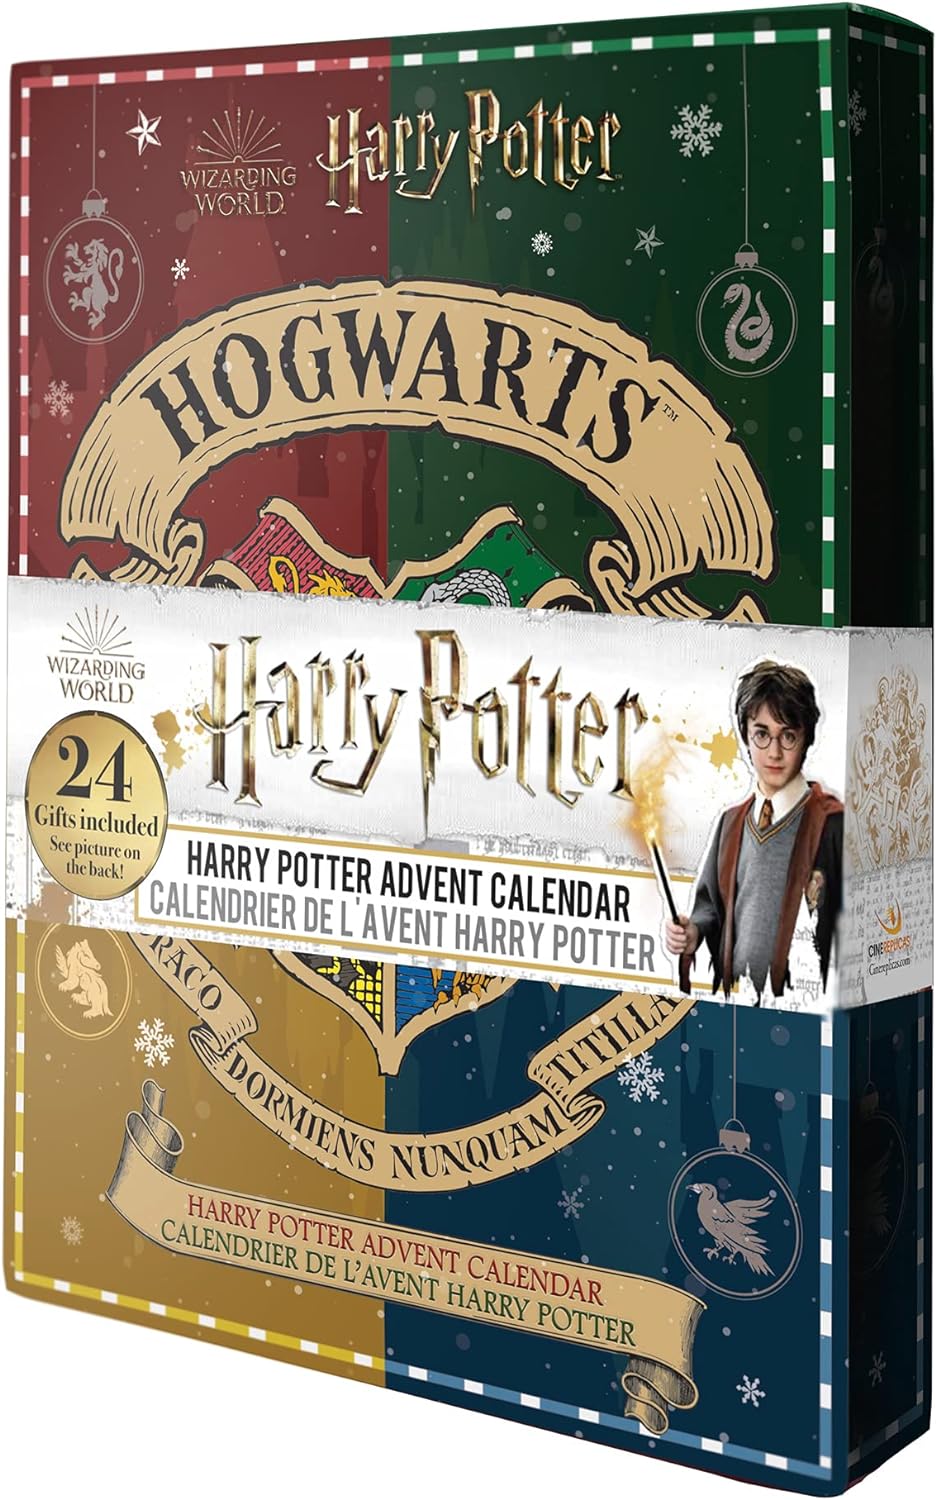 Adventskalender Harry Potter Hogwarts mit 24 magischen Gimmicks